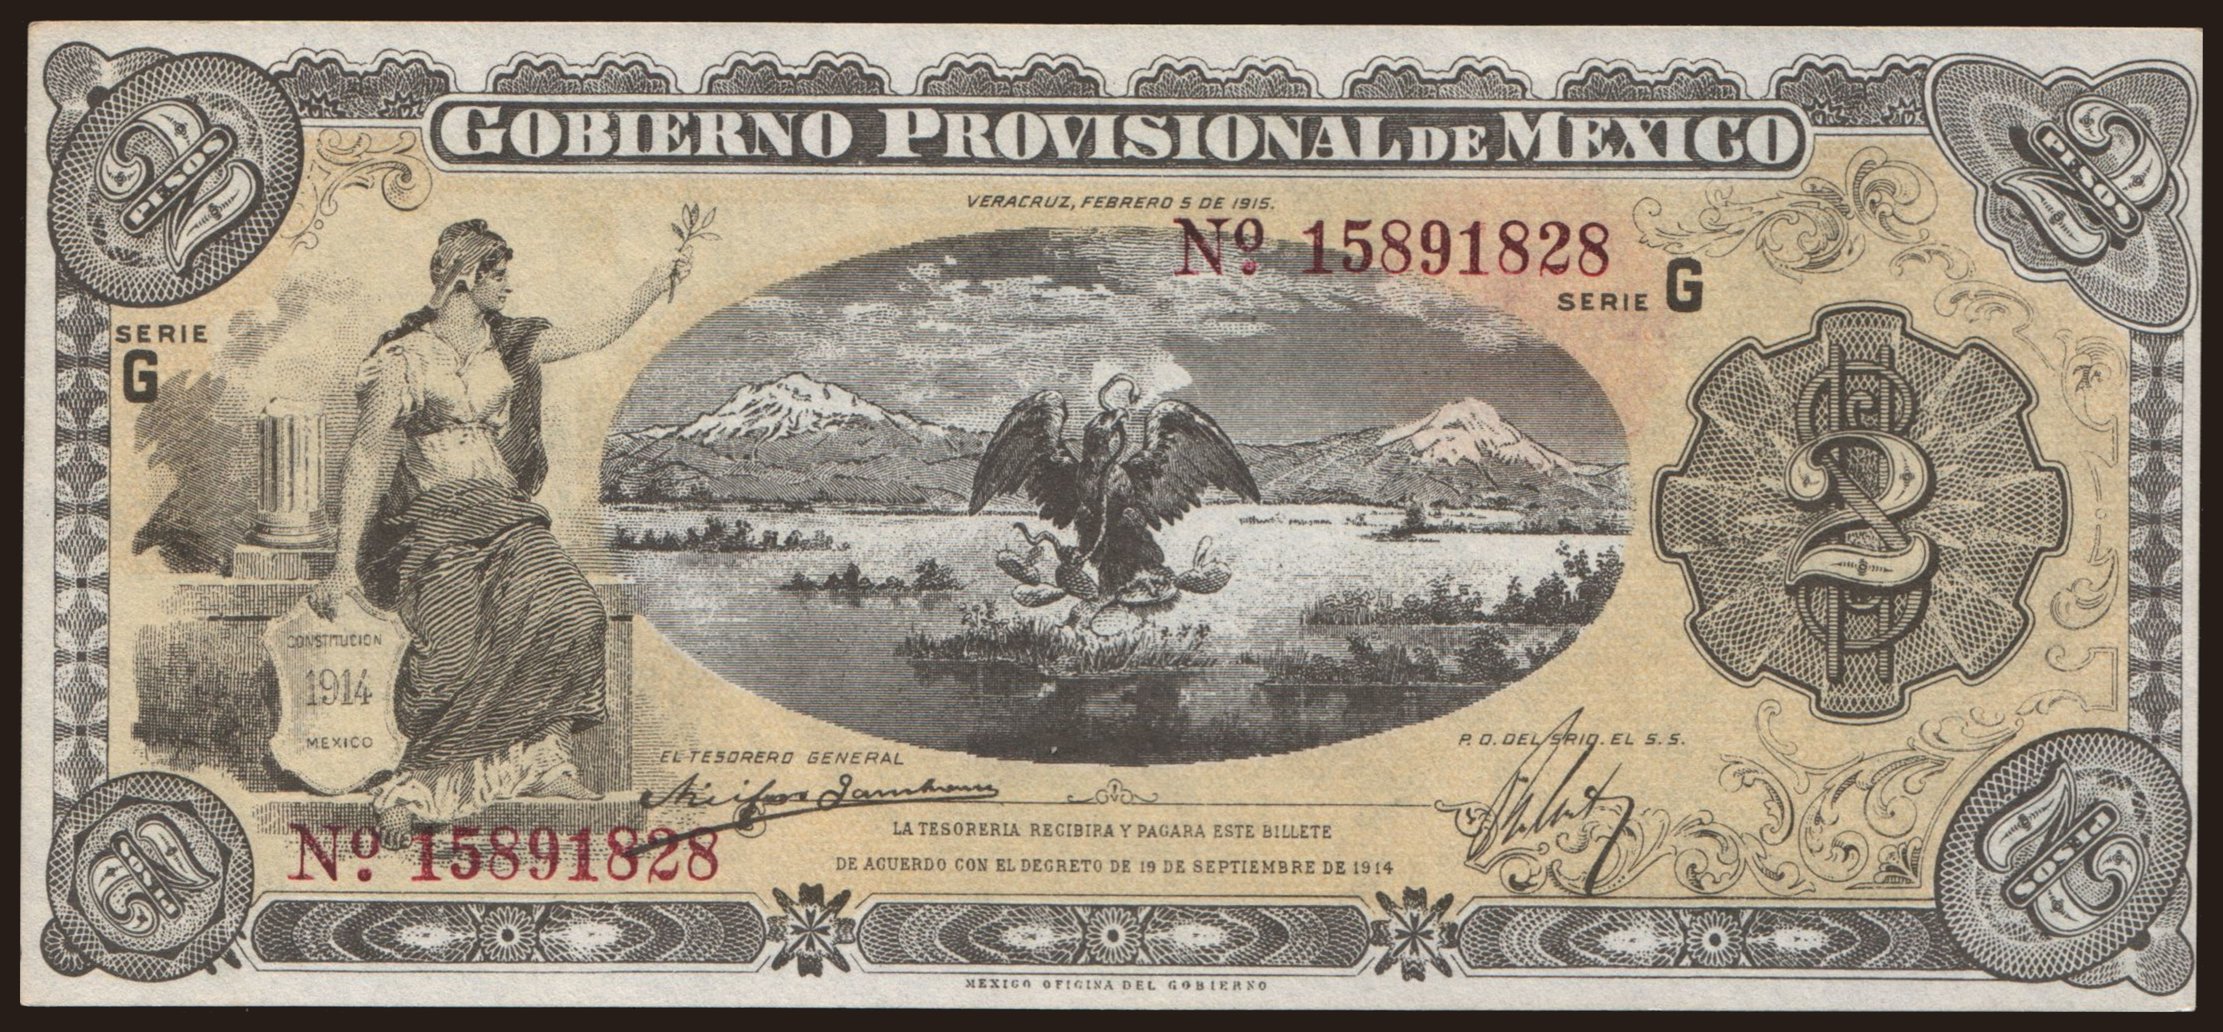 Gobierno Provisional de Mexico, 2 pesos, 1914